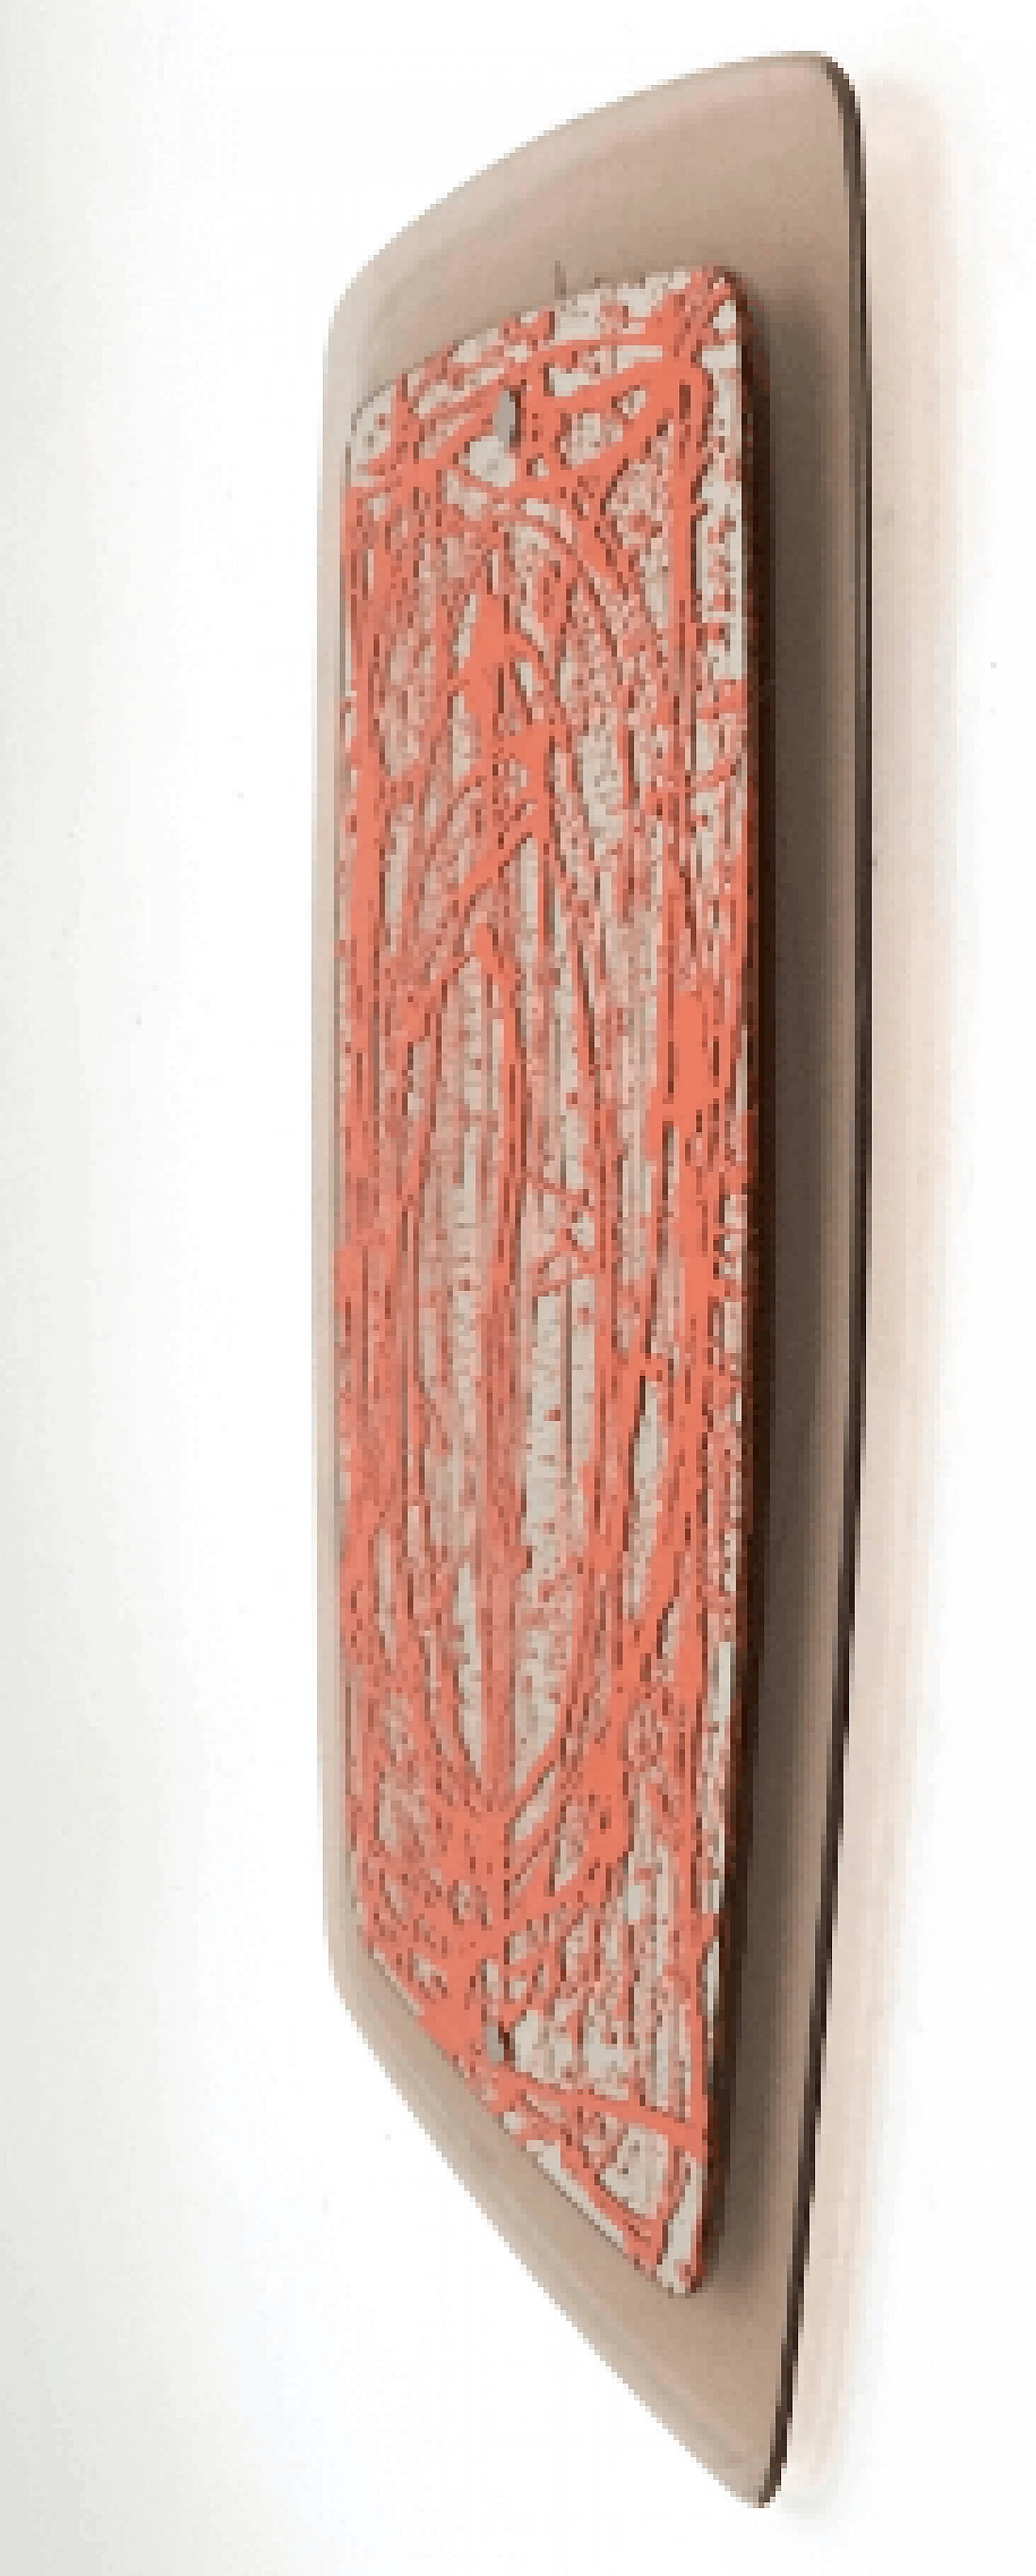 Specchio da parete in plexiglass con dettagli in smalto arancione, 2012 3